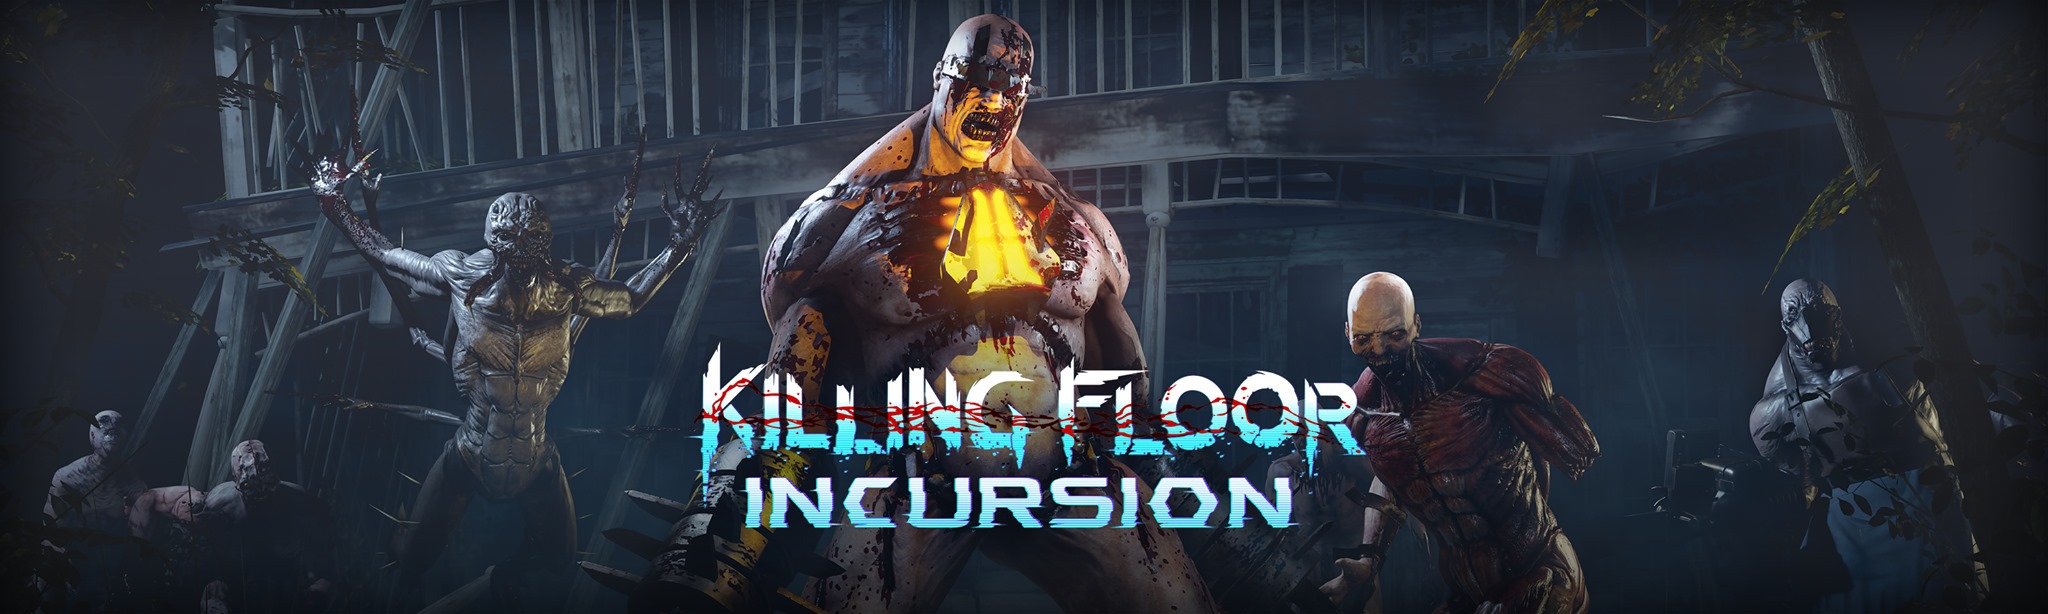 Killing Floor Incursion Vr Shooter Jetzt Erhaltlich Launch